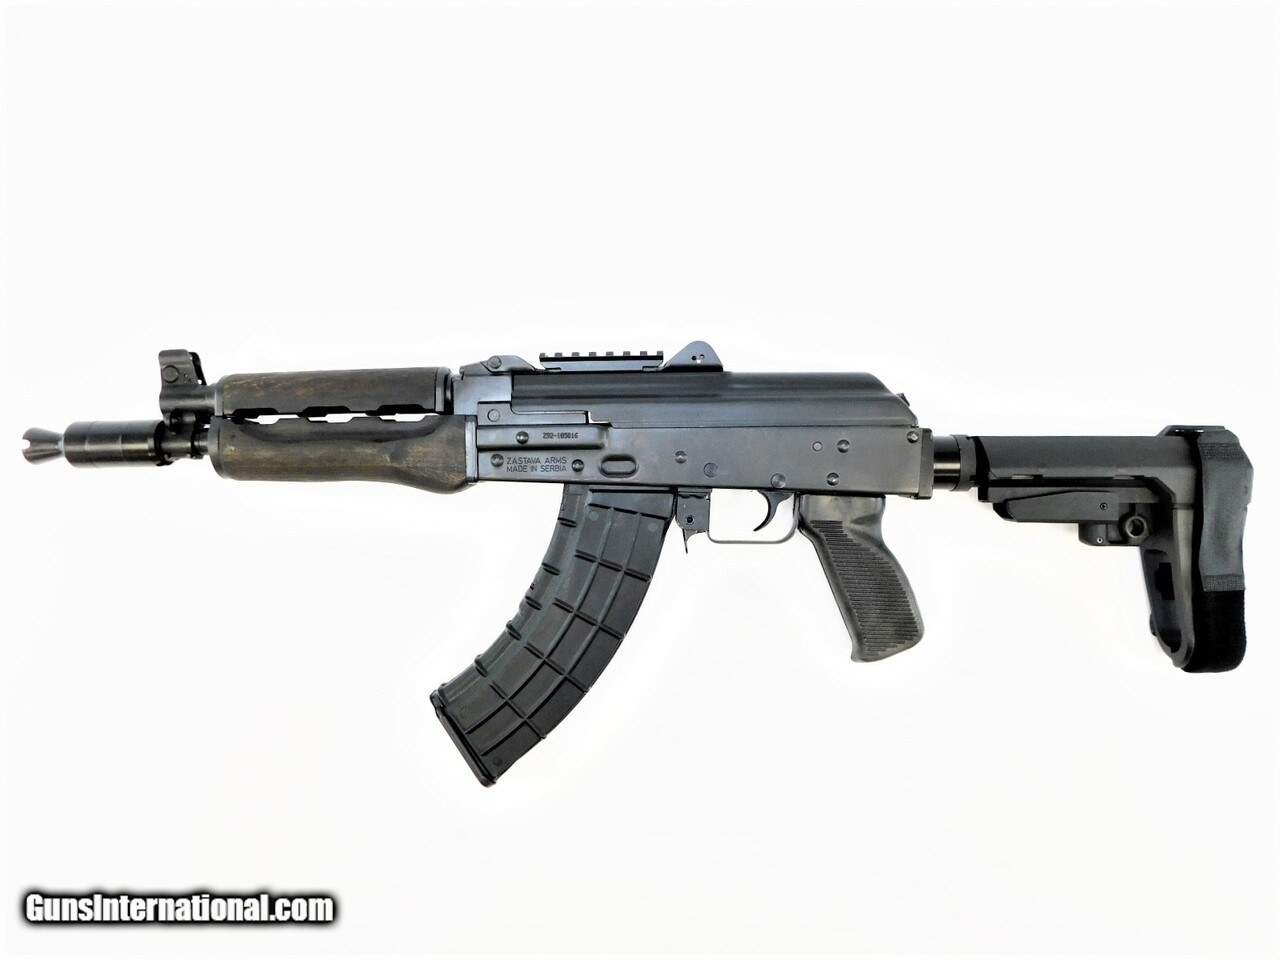 ZPAP92, AK-47, 7.62x39